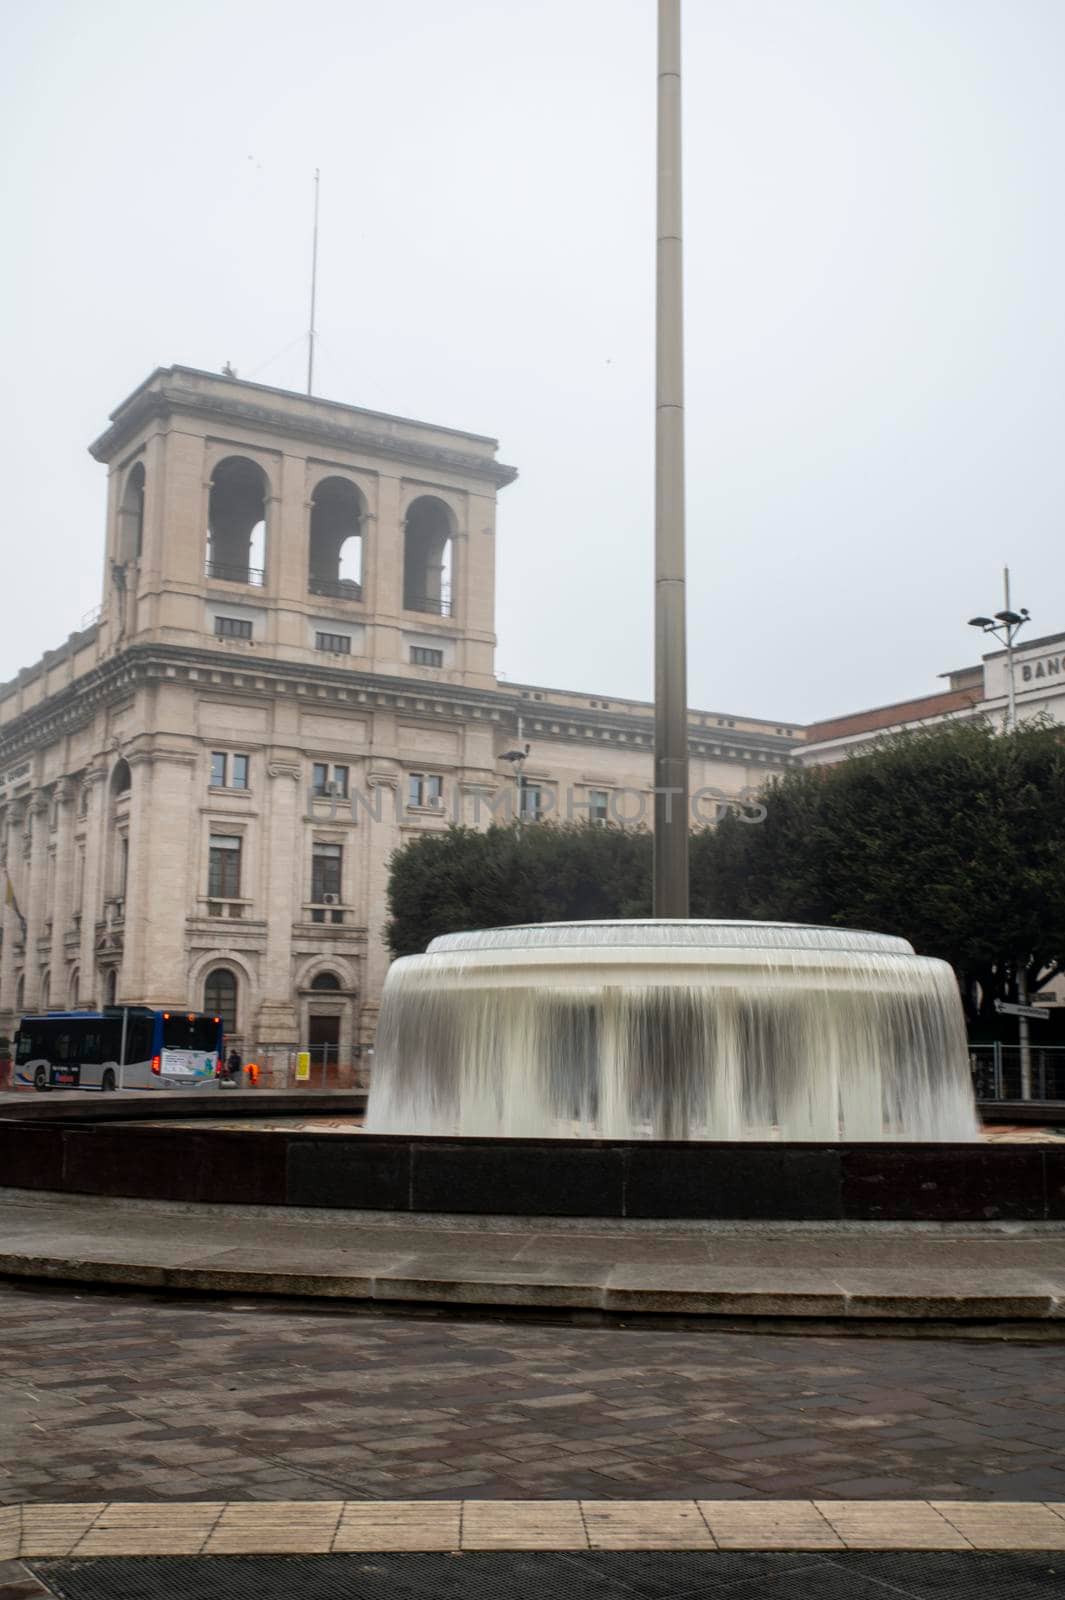 terni,italy january 17 2022:terni square Tacitus and its fountain with fog